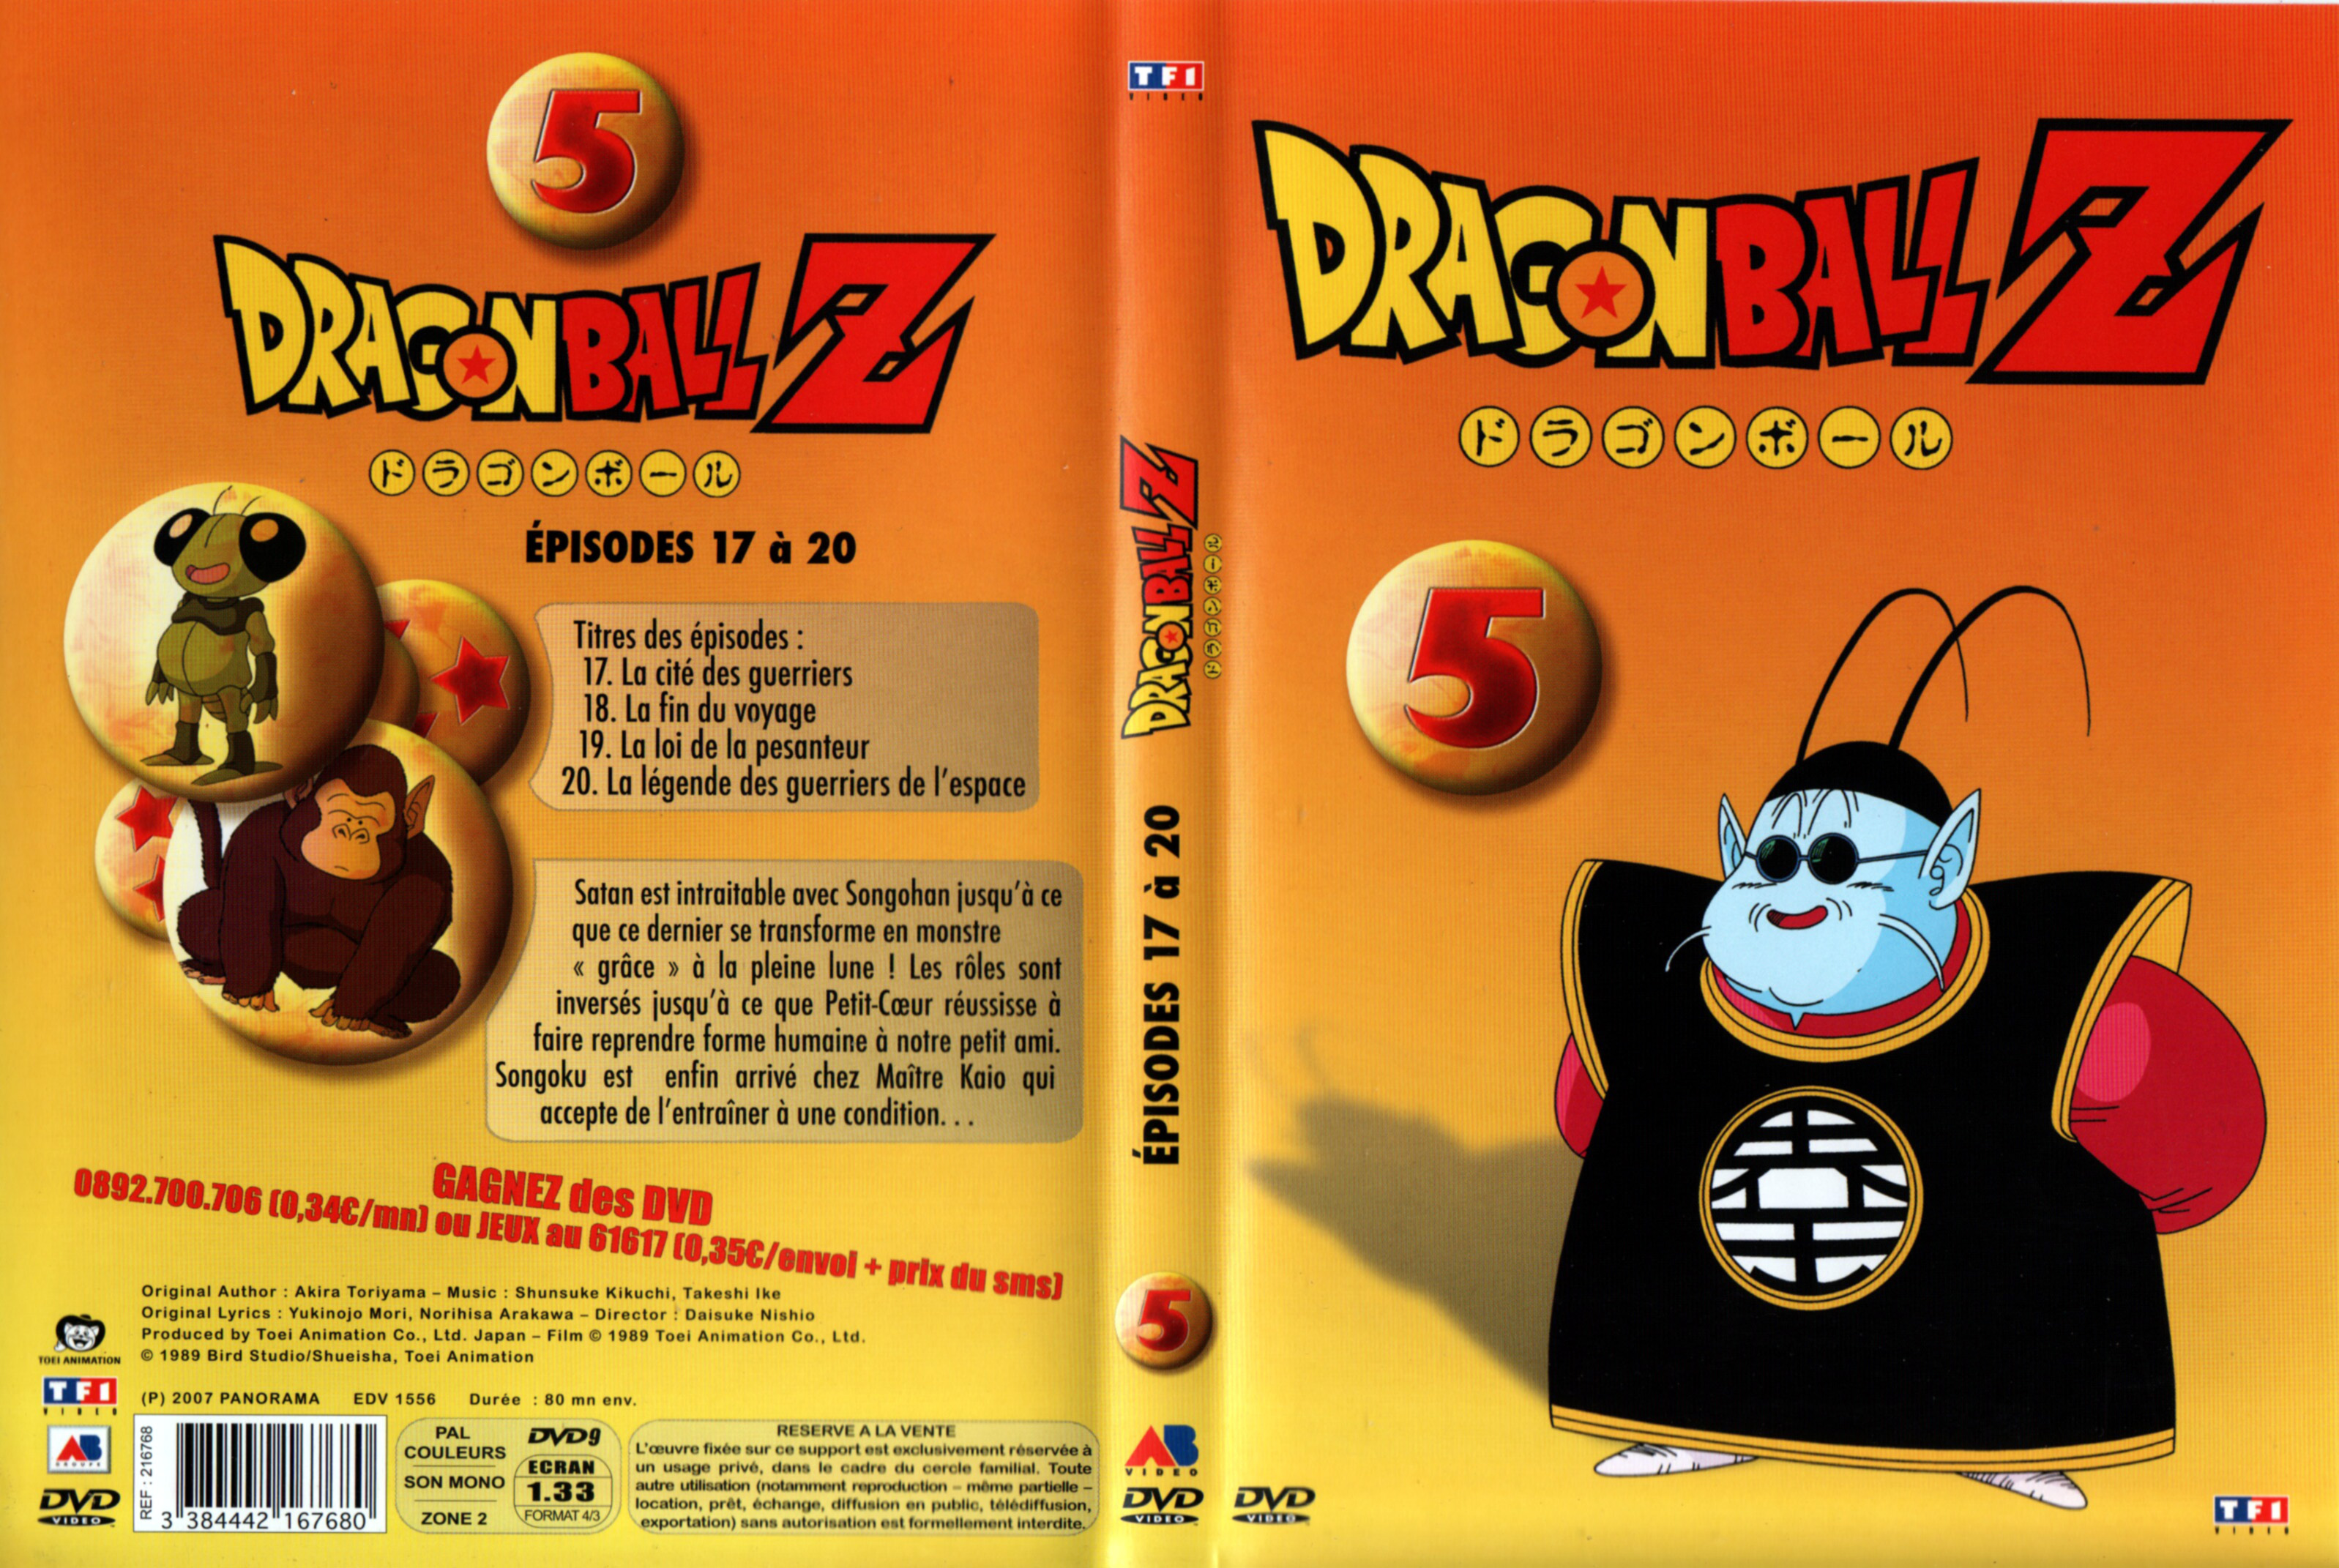 Jaquette DVD Dragon Ball Z vol 05 v2